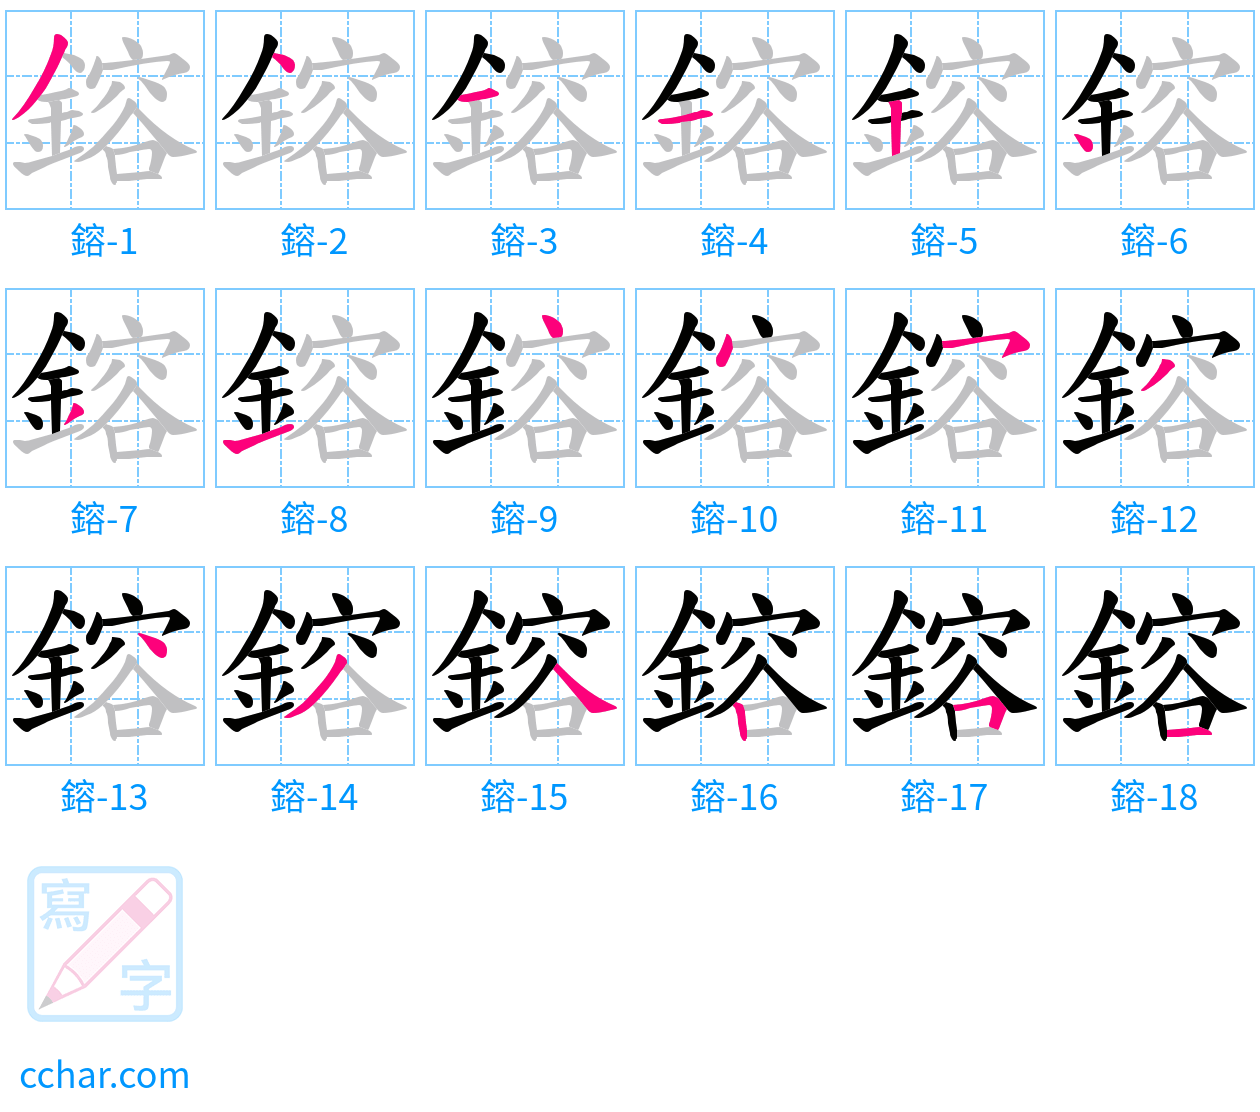 鎔 stroke order step-by-step diagram